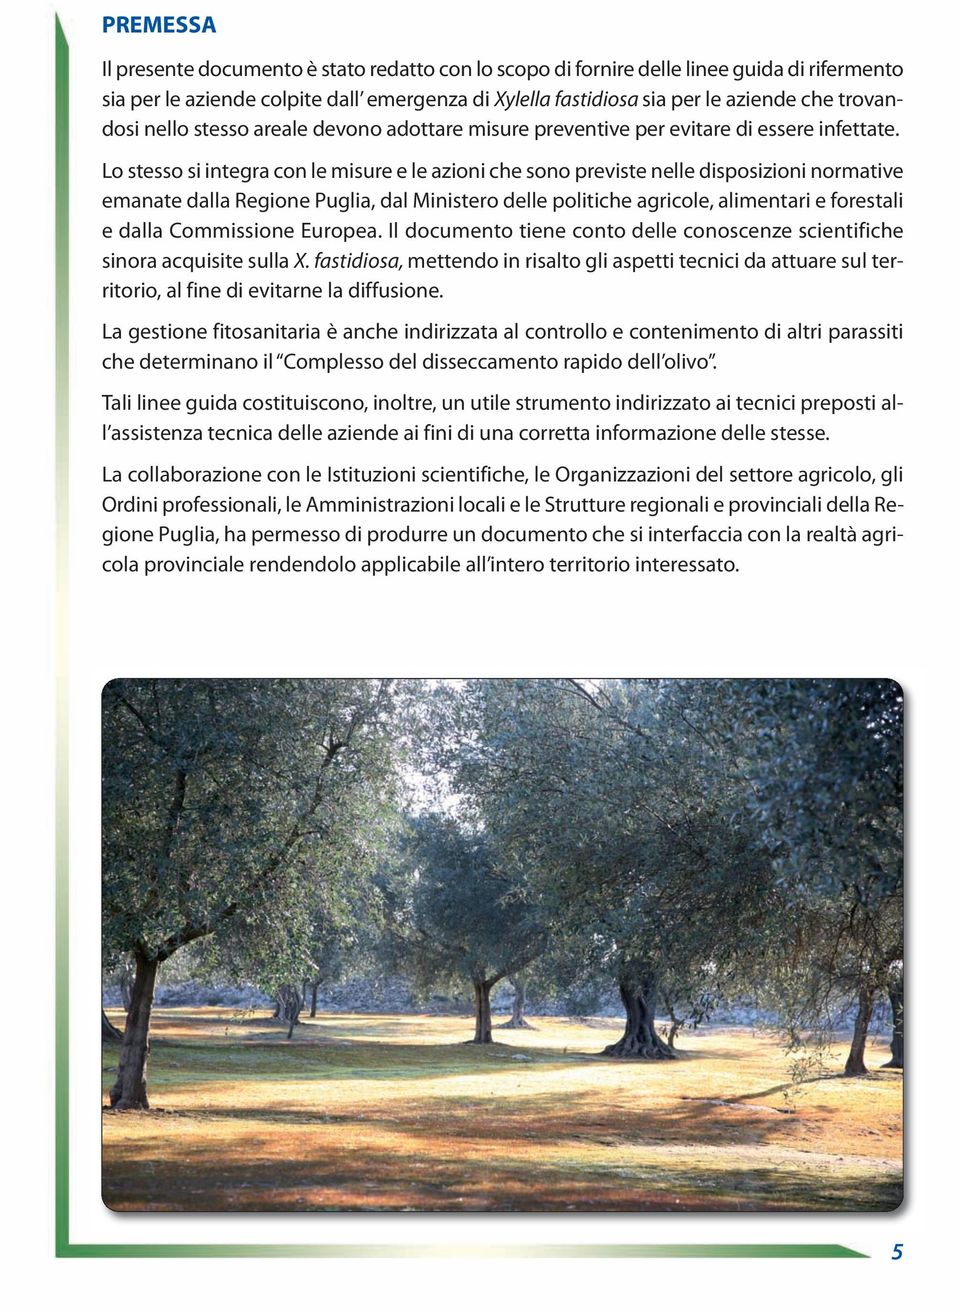 Lo stesso si integra con le misure e le azioni che sono previste nelle disposizioni normative emanate dalla Regione Puglia, dal Ministero delle politiche agricole, alimentari e forestali e dalla